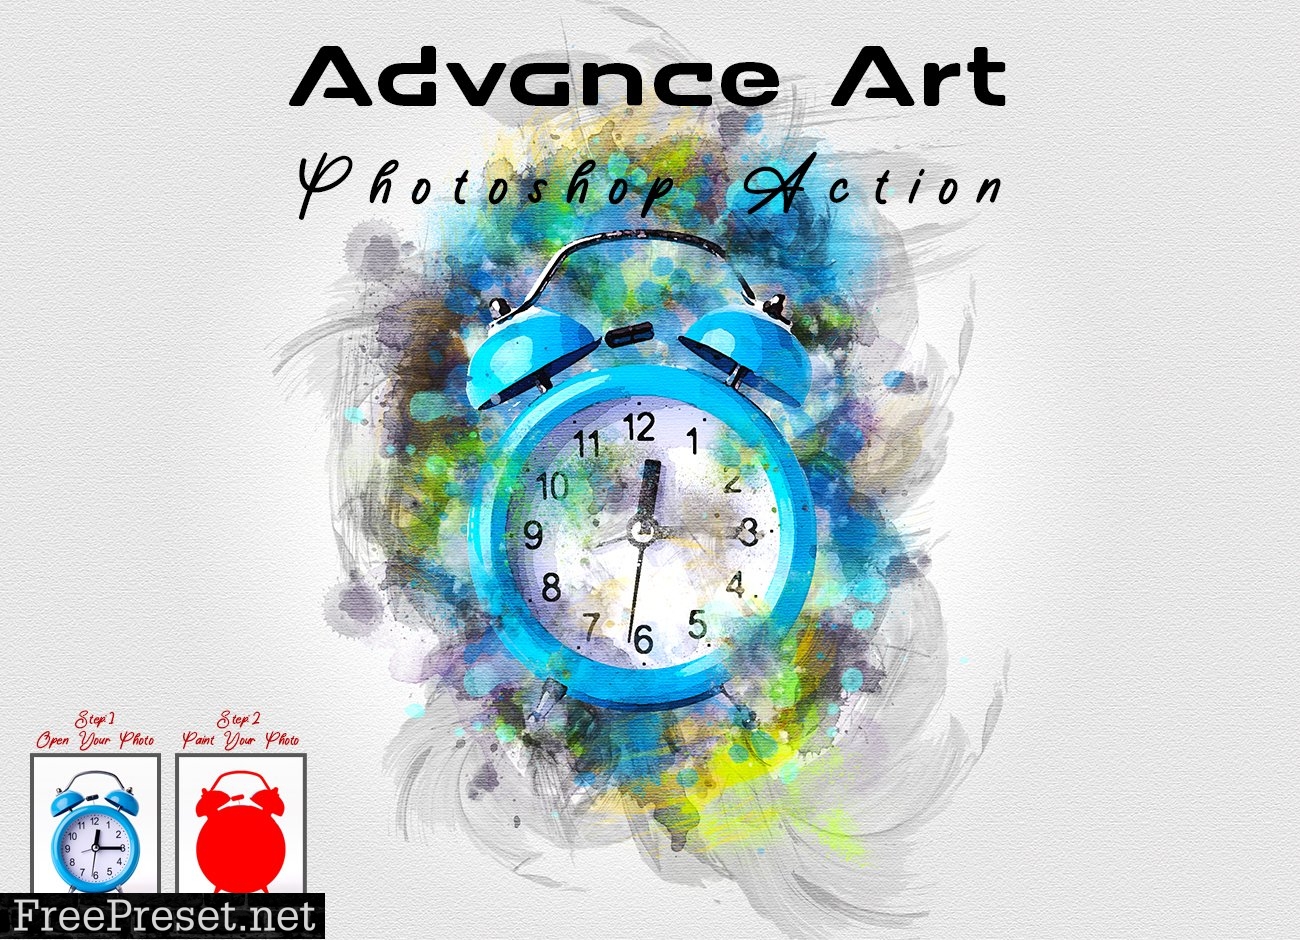 Advance Art Photoshop Action 7410764